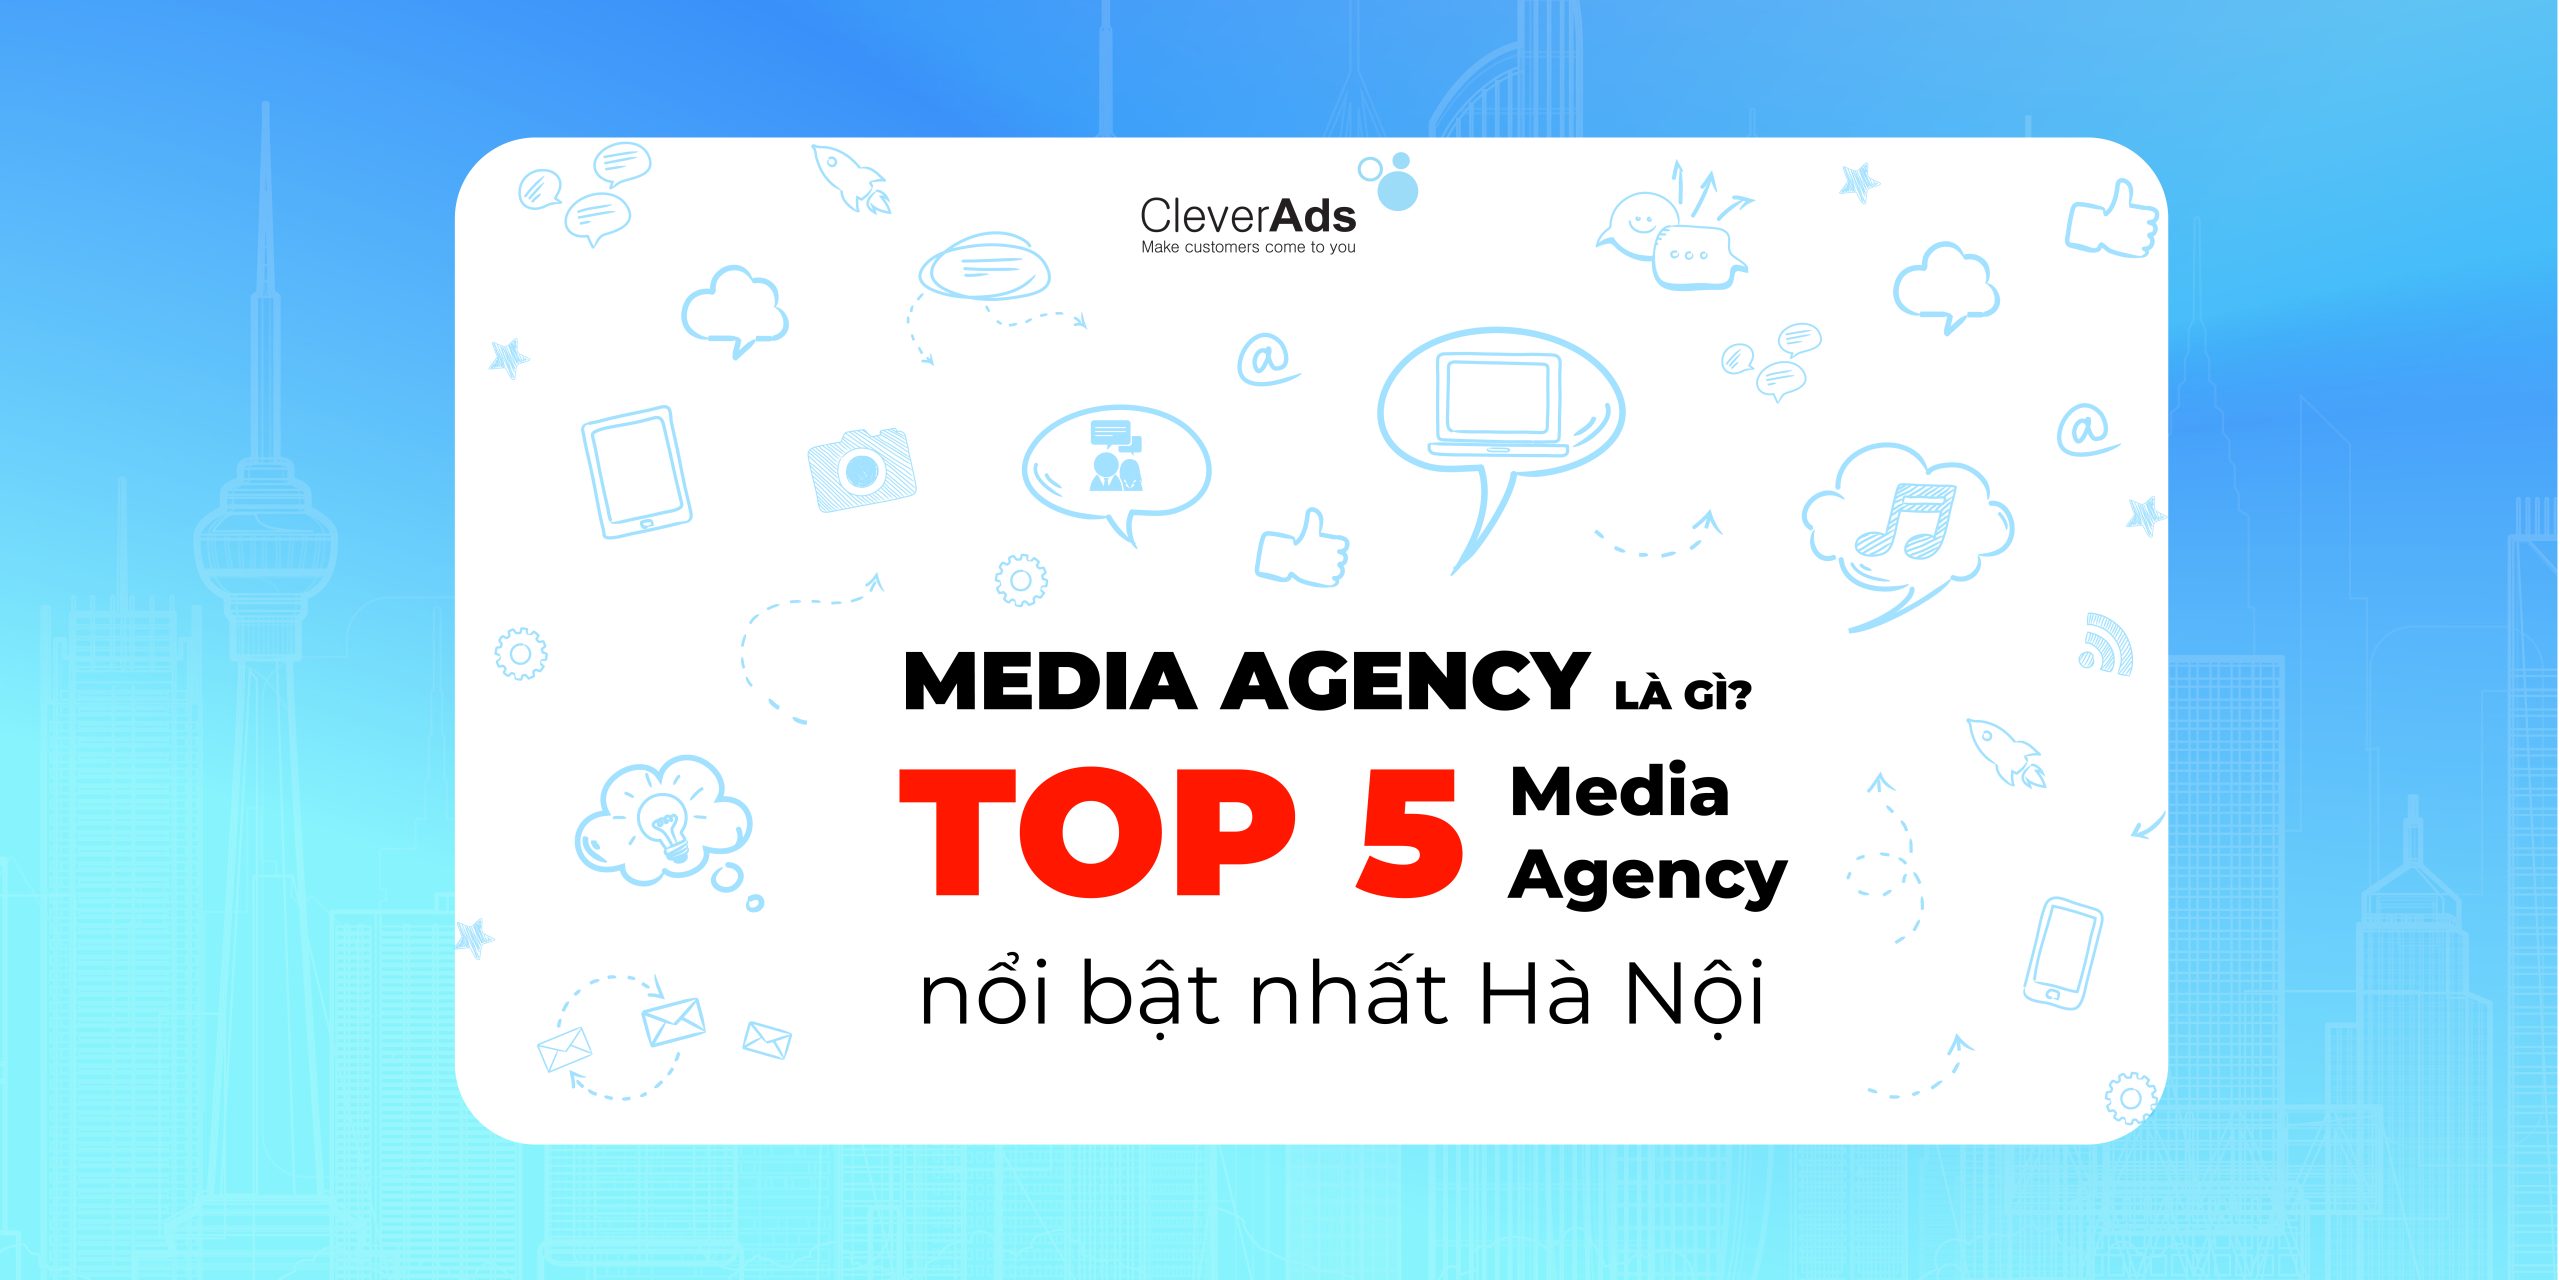 Media Agency là gì? Top 5 Media Agency nổi bật nhất Hà Nội